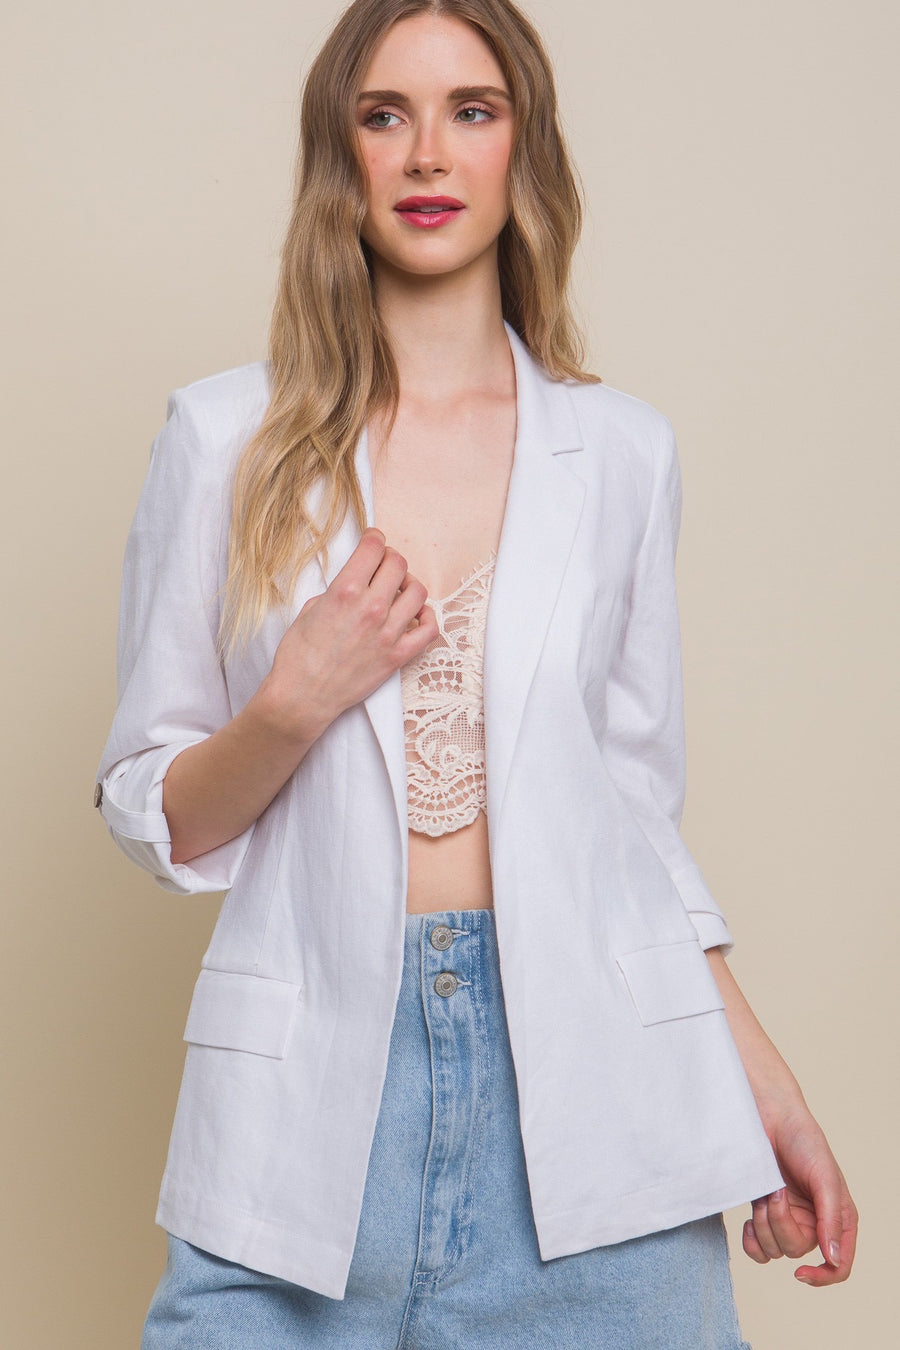 Linen blazer in the color white.